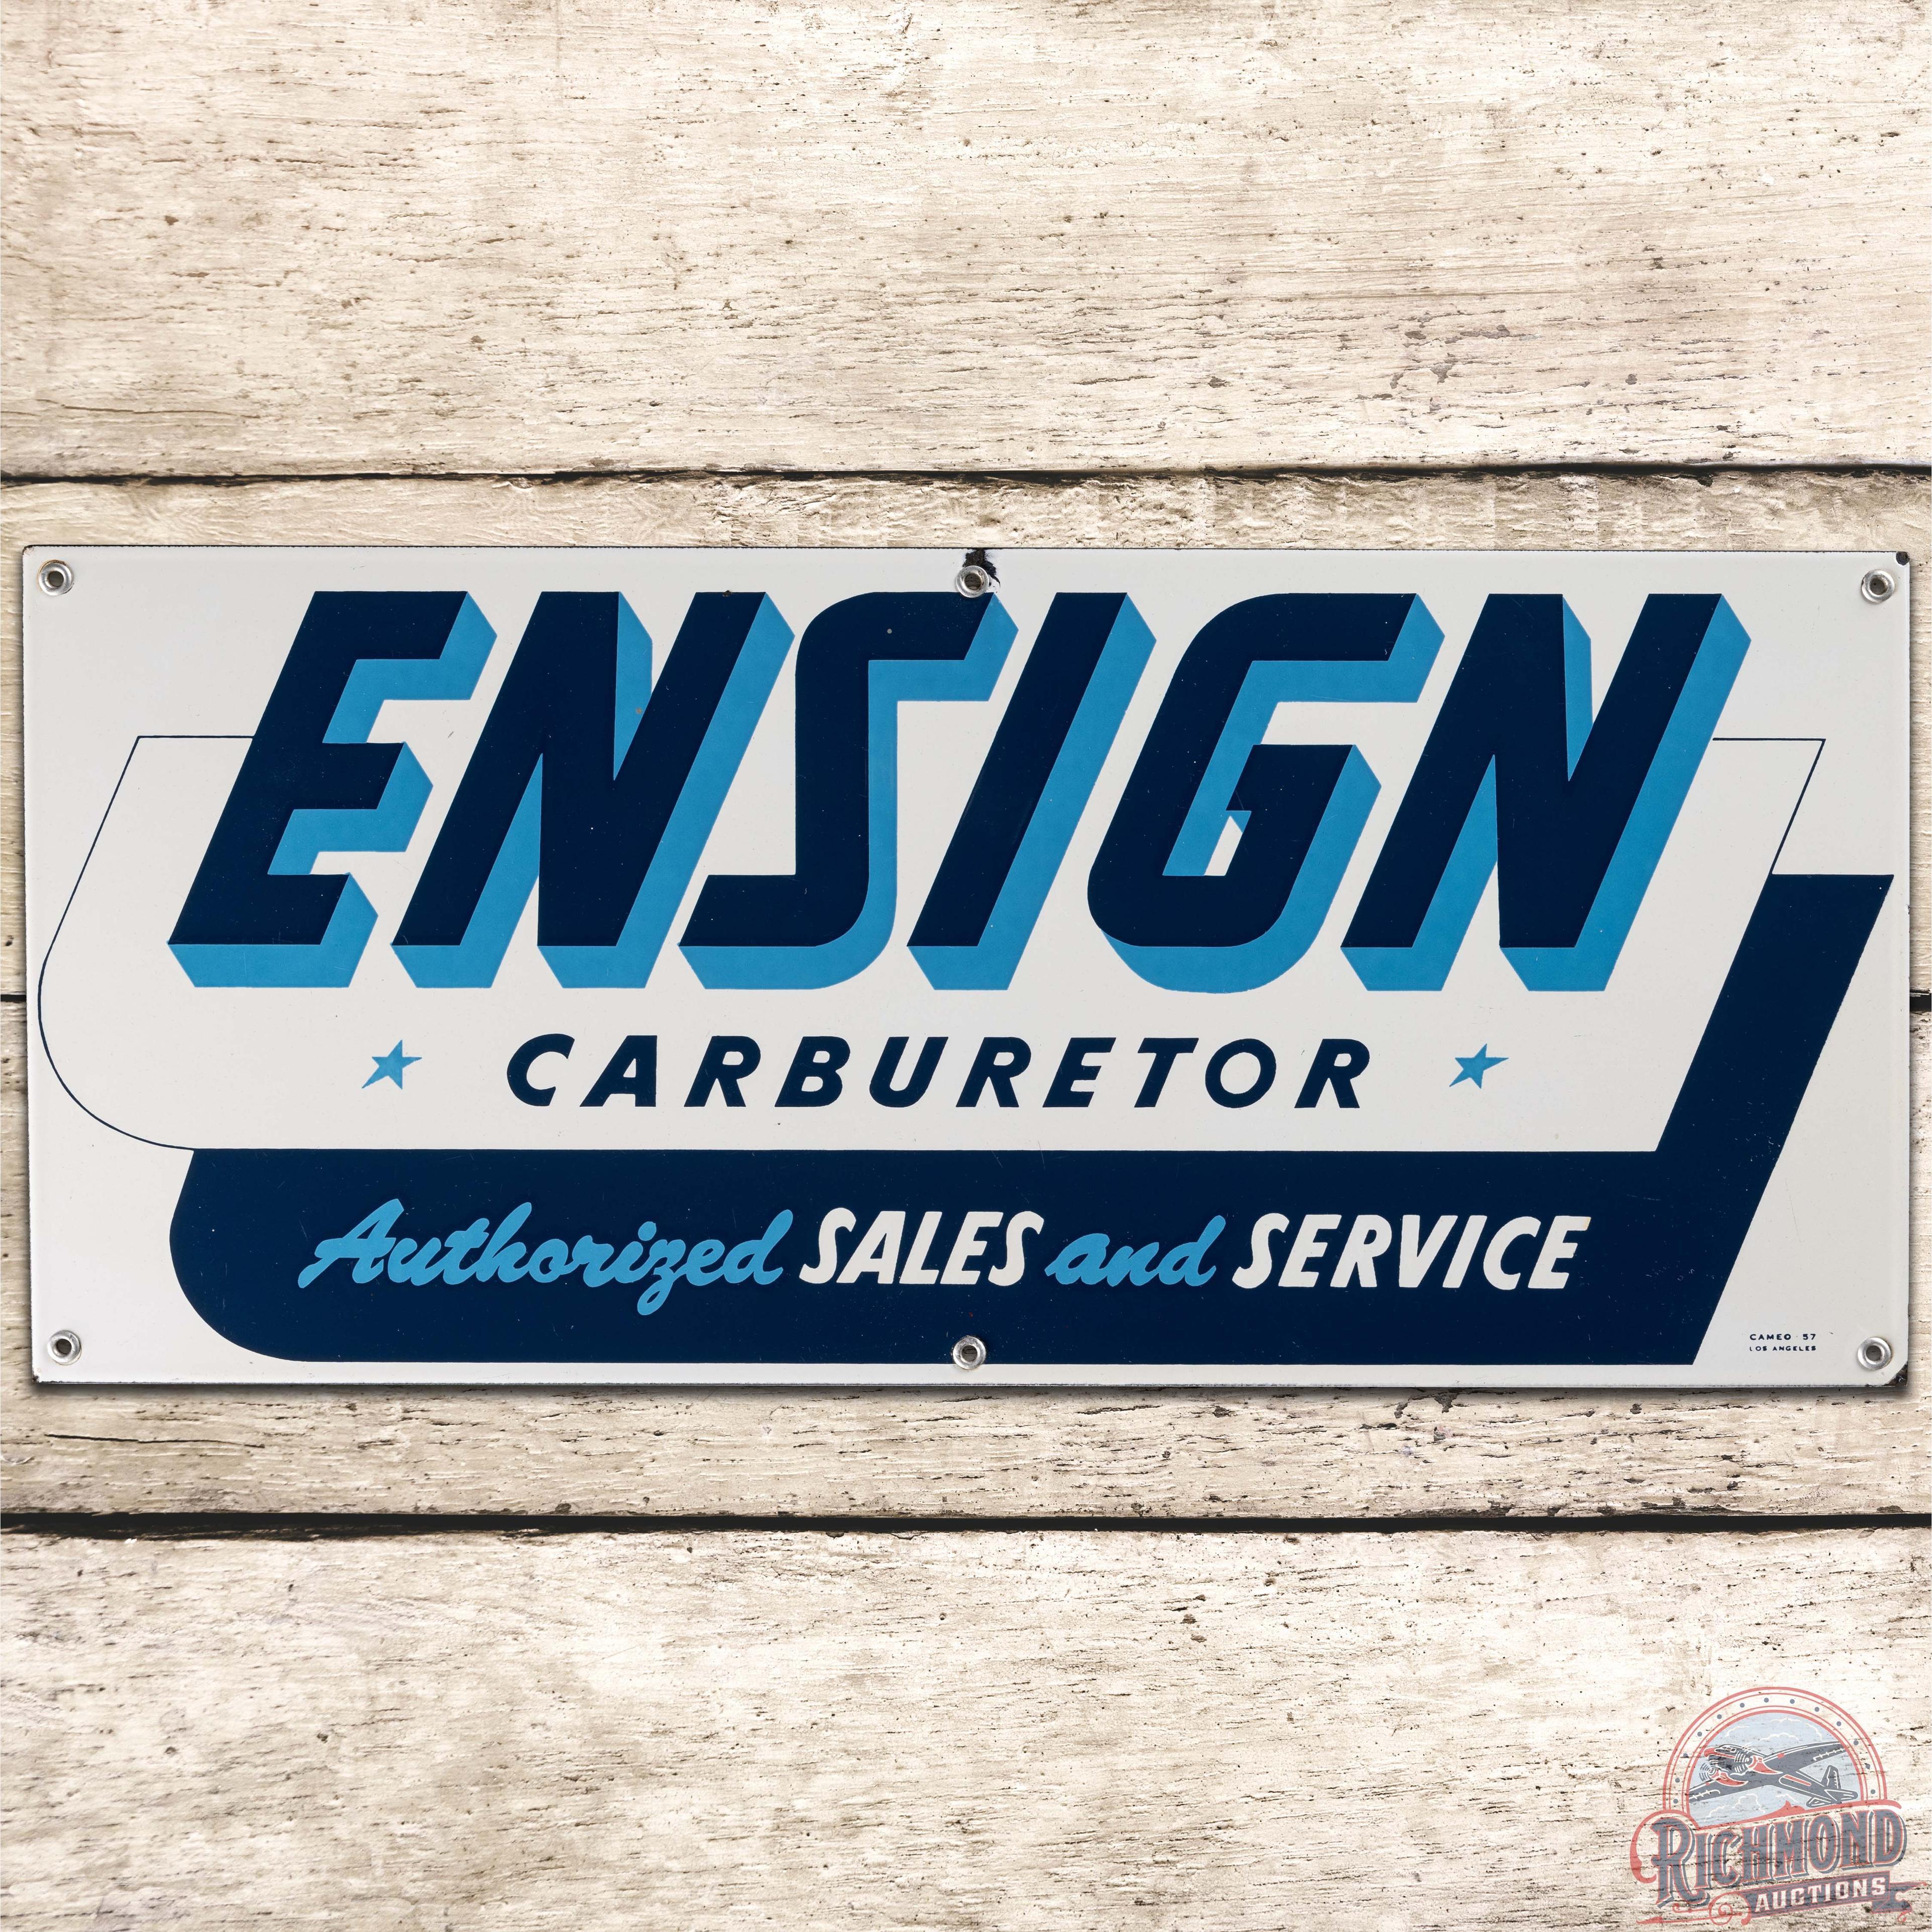 1957 Ensign Carburetor Sales & Service SS Porcelain Sign